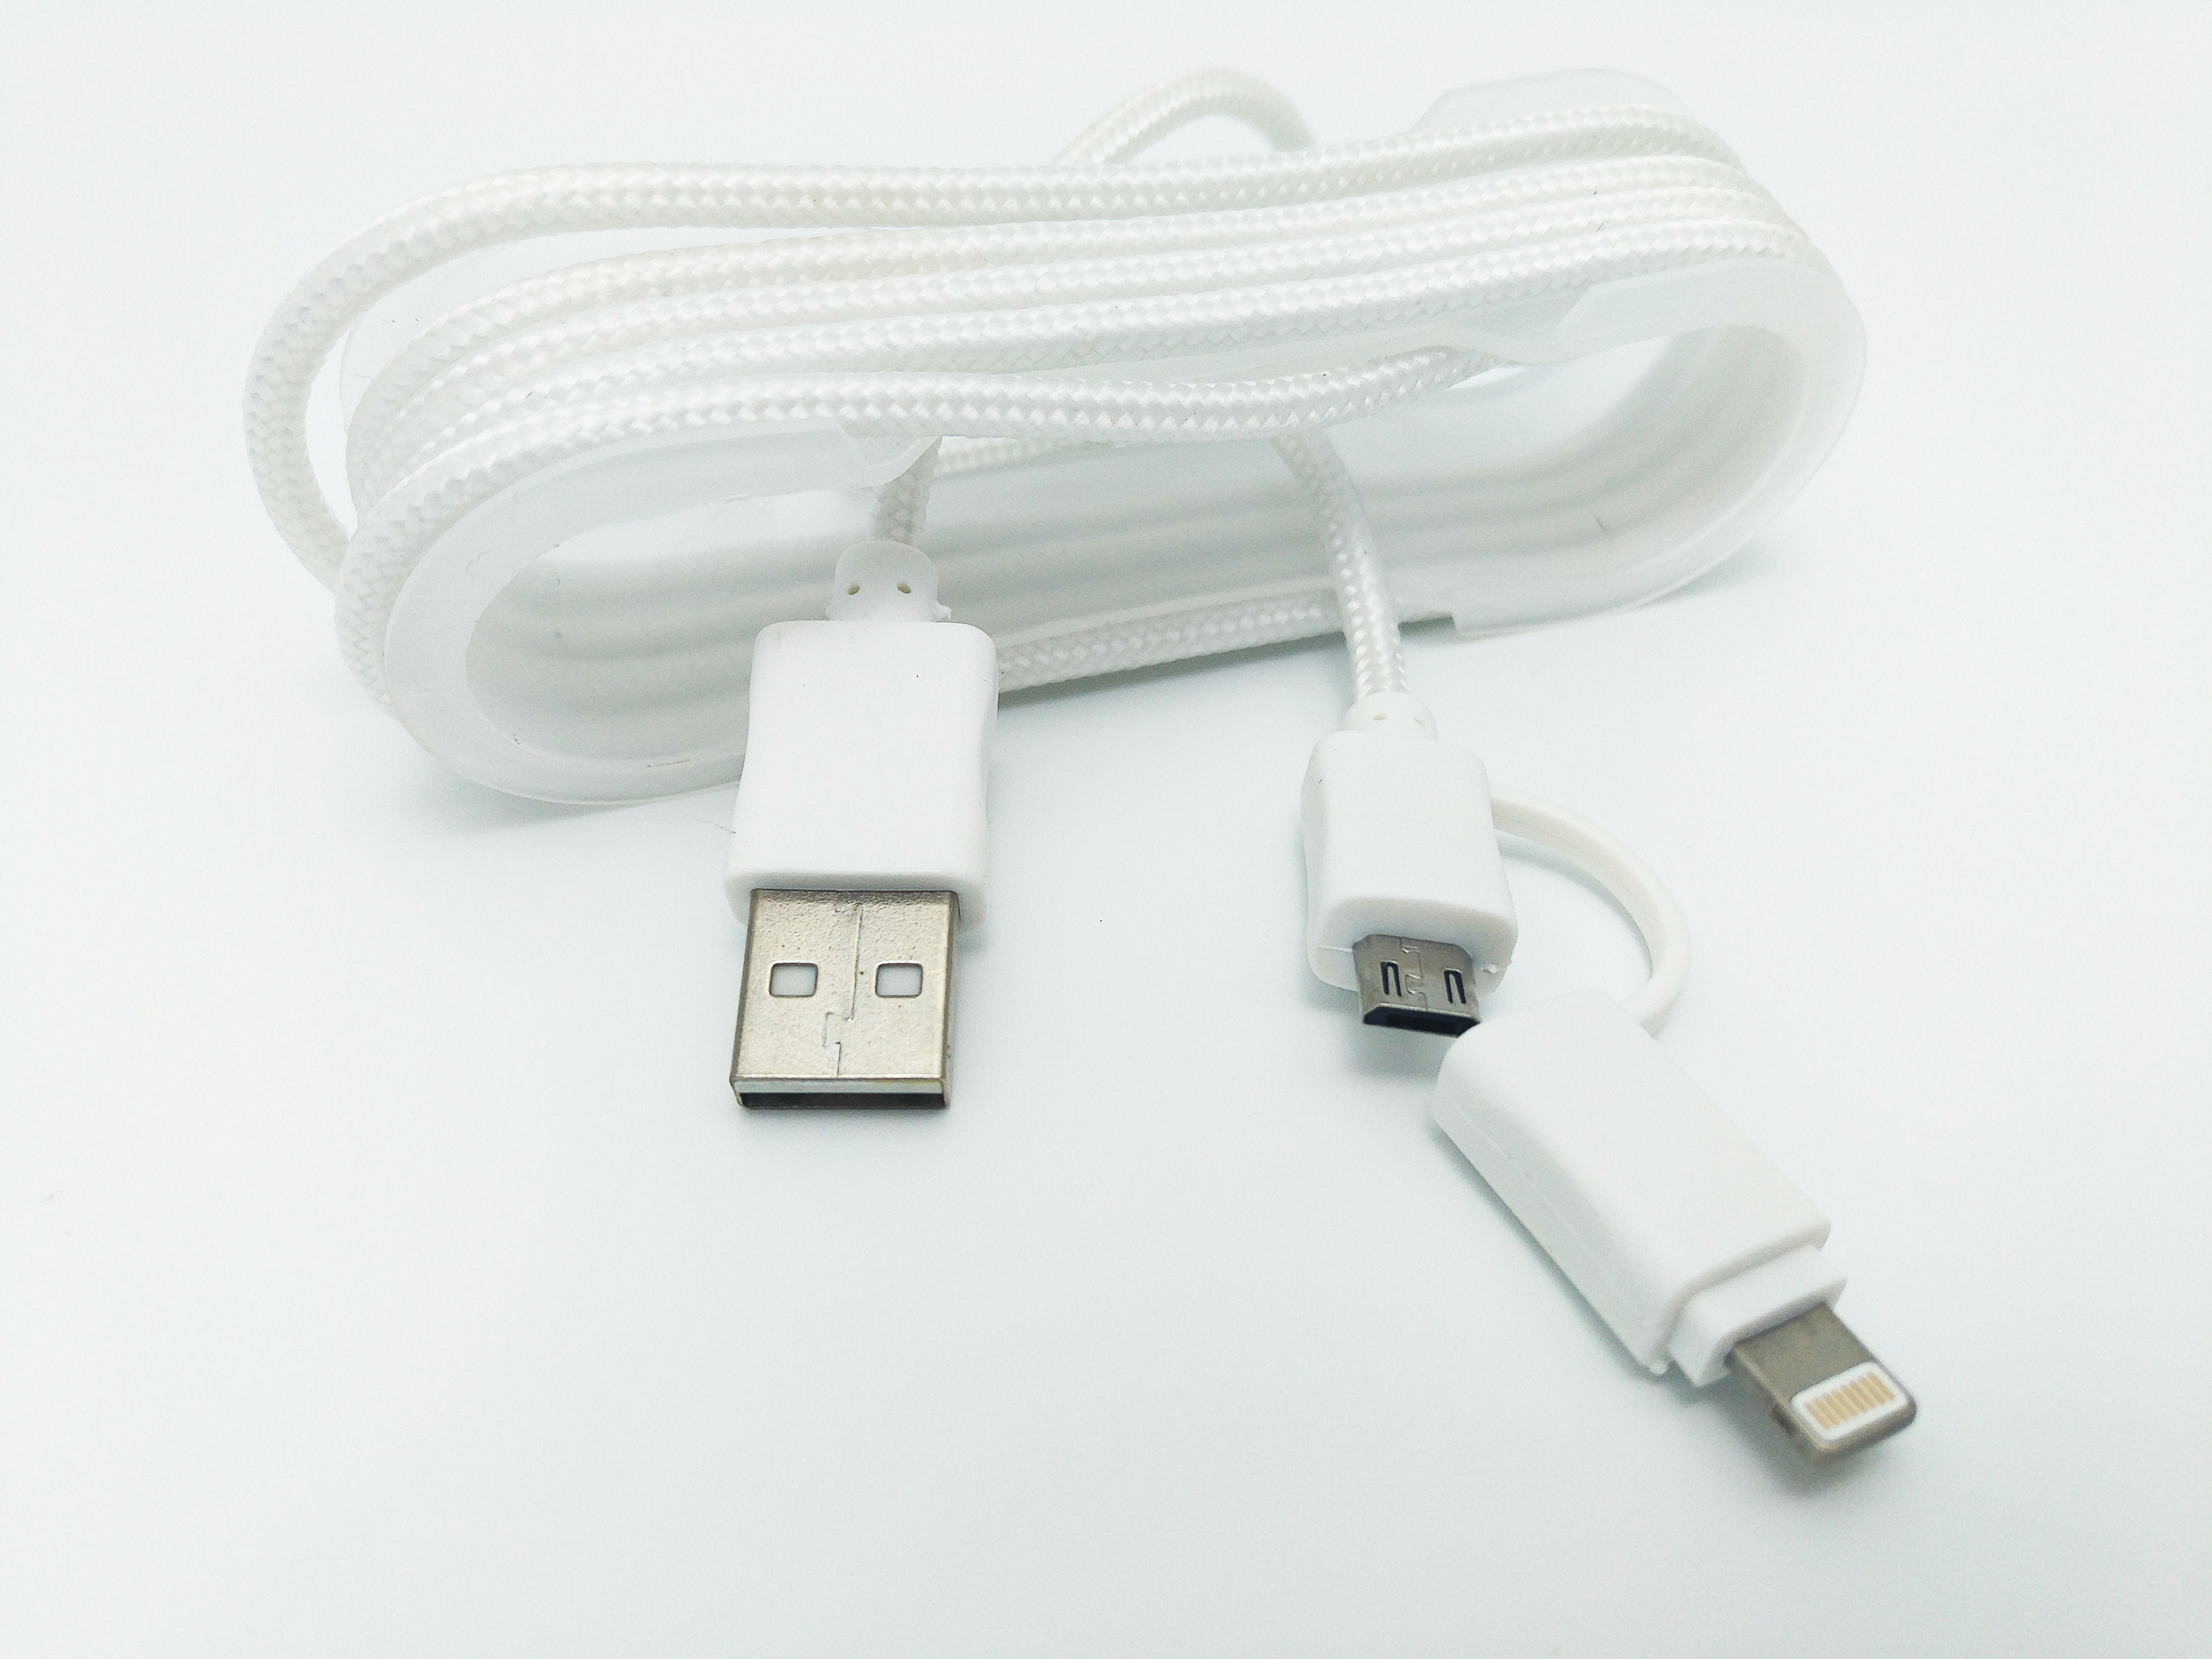 Cablu De Date MRG M-175, 2 In 1, Iphone 5/6 + Micro USB, Alb